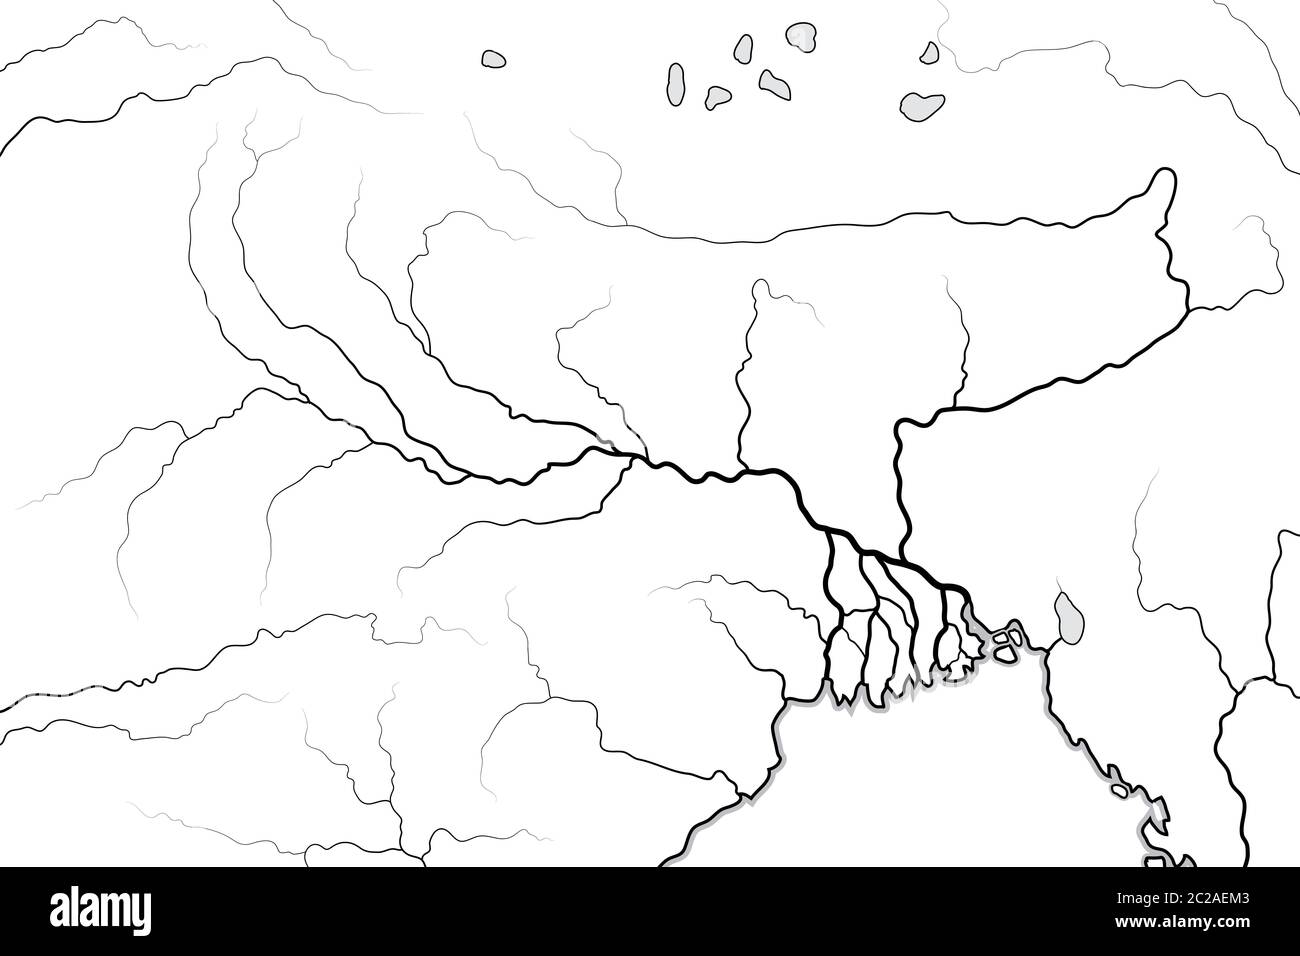 Mappa del mondo della Valle DEL FIUME GANGE e Delta: India, Nepal, Bengala, Bangladesh. Grafico geografico. Foto Stock